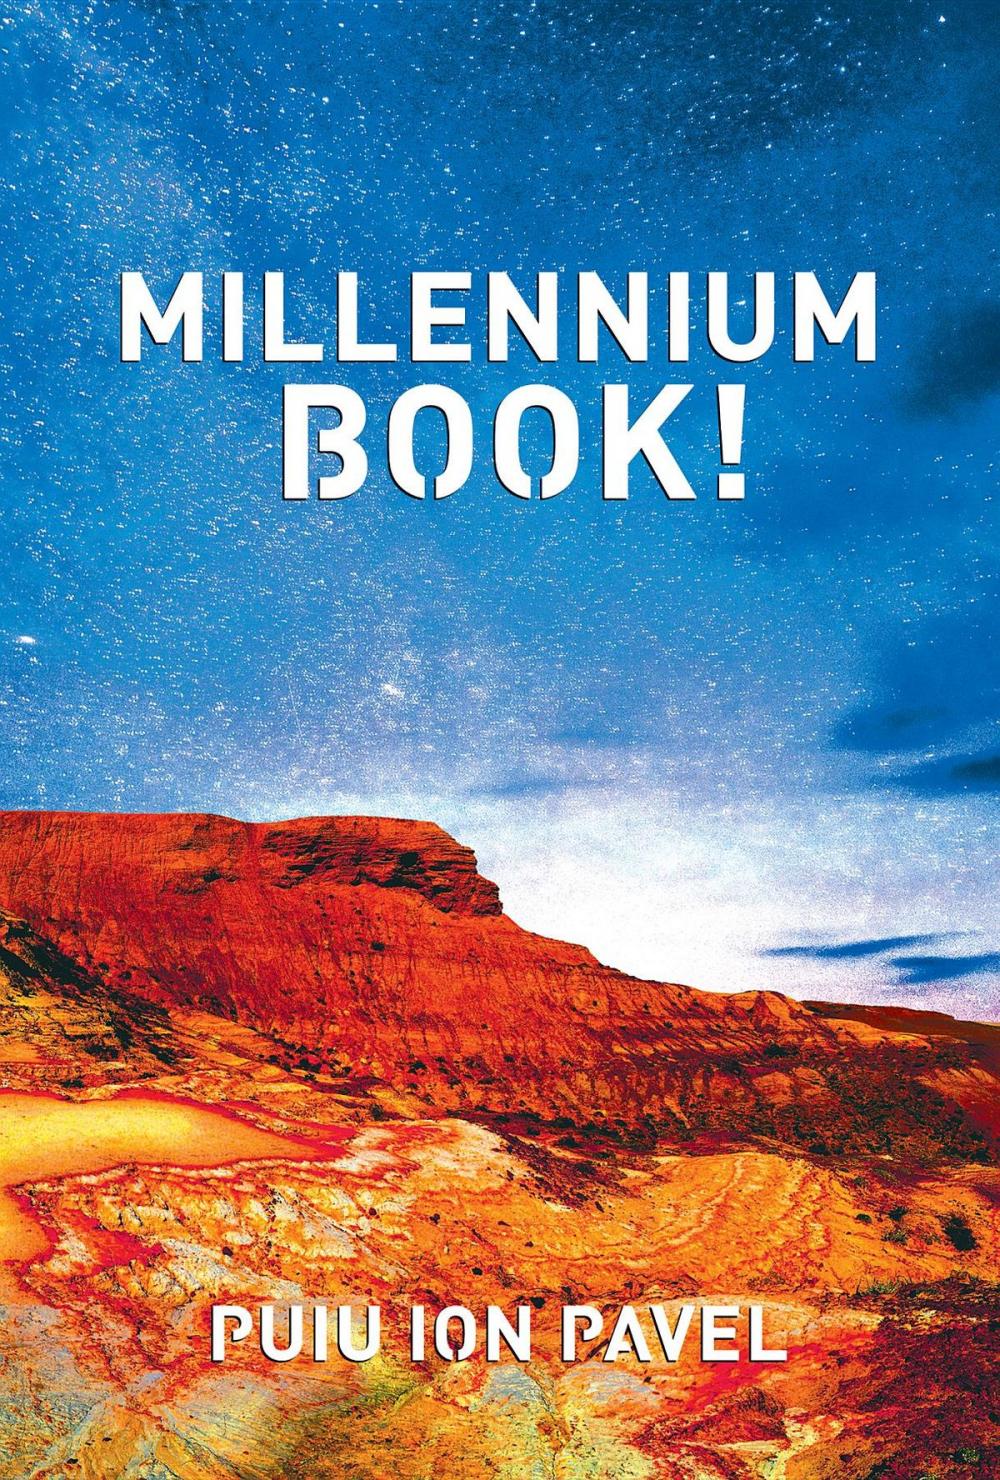 Big bigCover of Millennium Book!